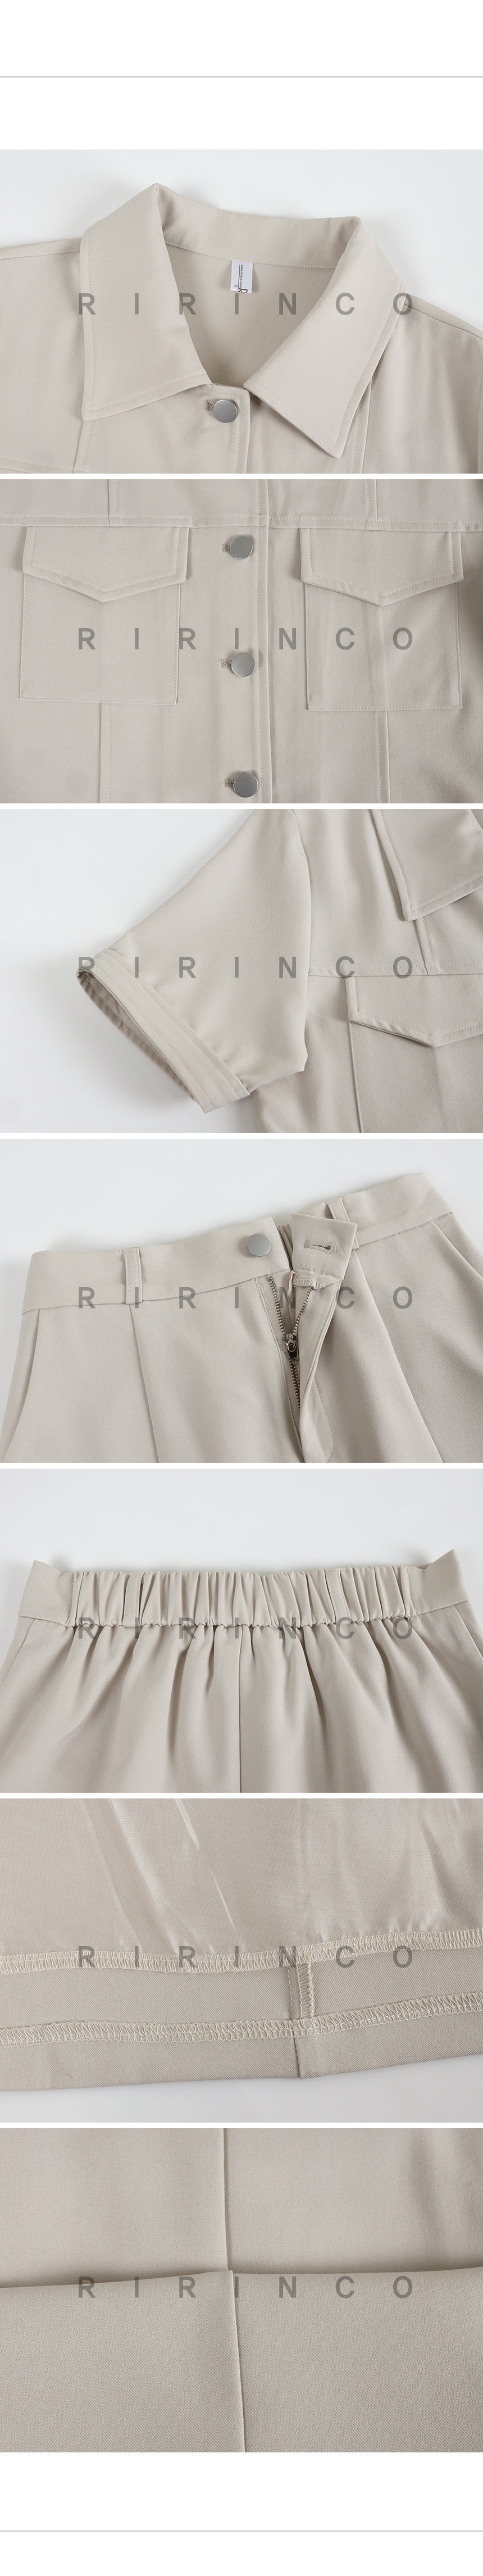 RIRINCO ポケット付きジャケット&後ろゴムミニスカート上下セット